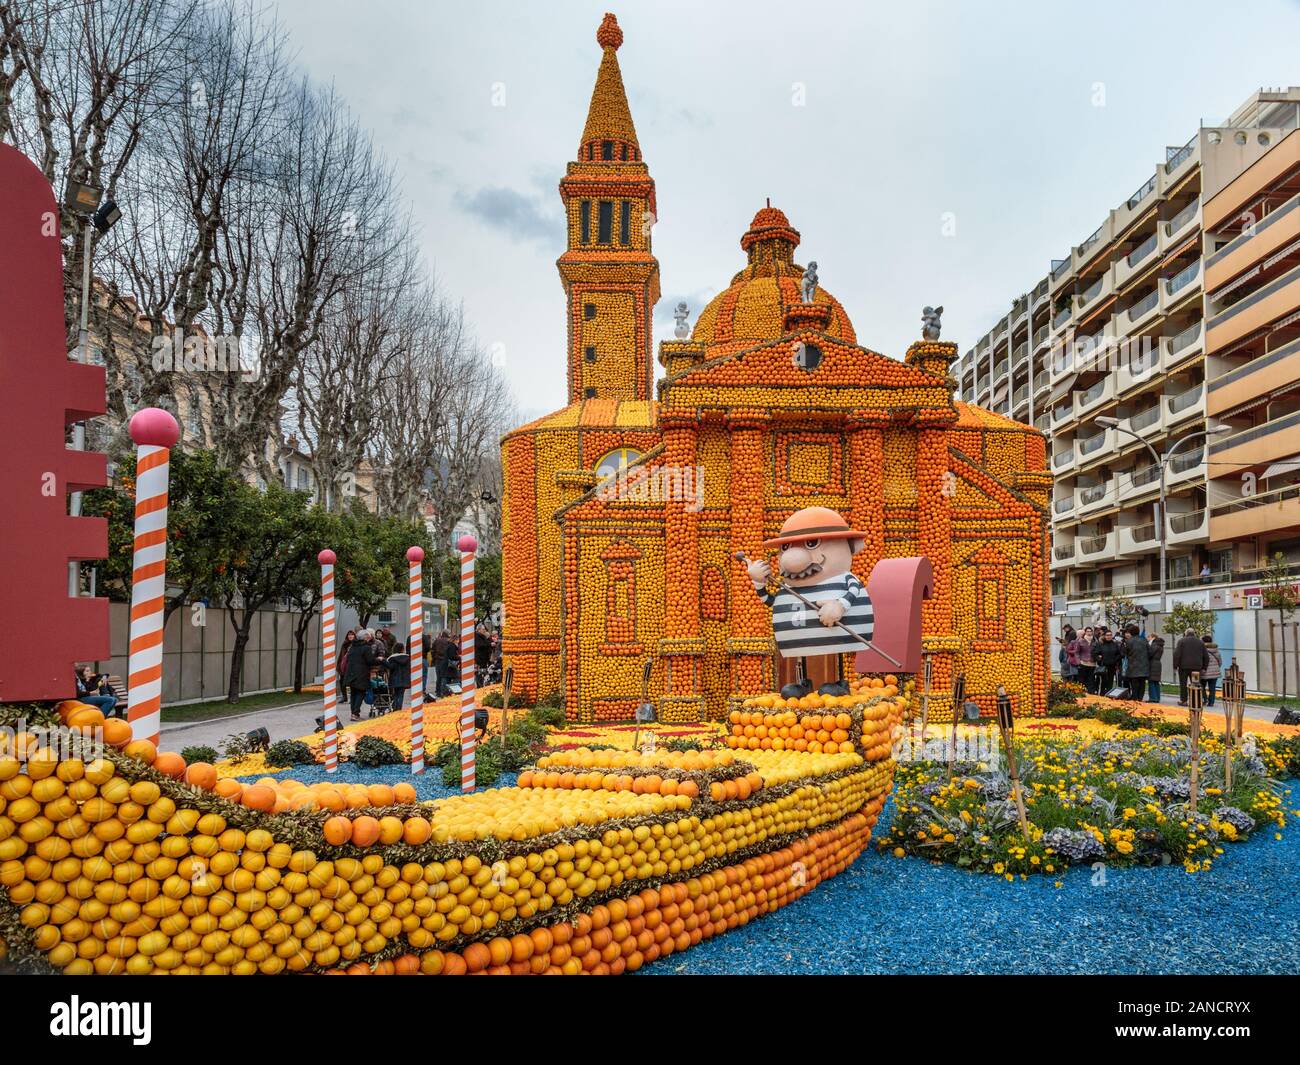 Exhibition of citrus patterns - Bioves Gardens. Menton Lemon Festival, Fête du Citron, Menton, Alpes-Maritimes, Côte d'Azur, France Stock Photo